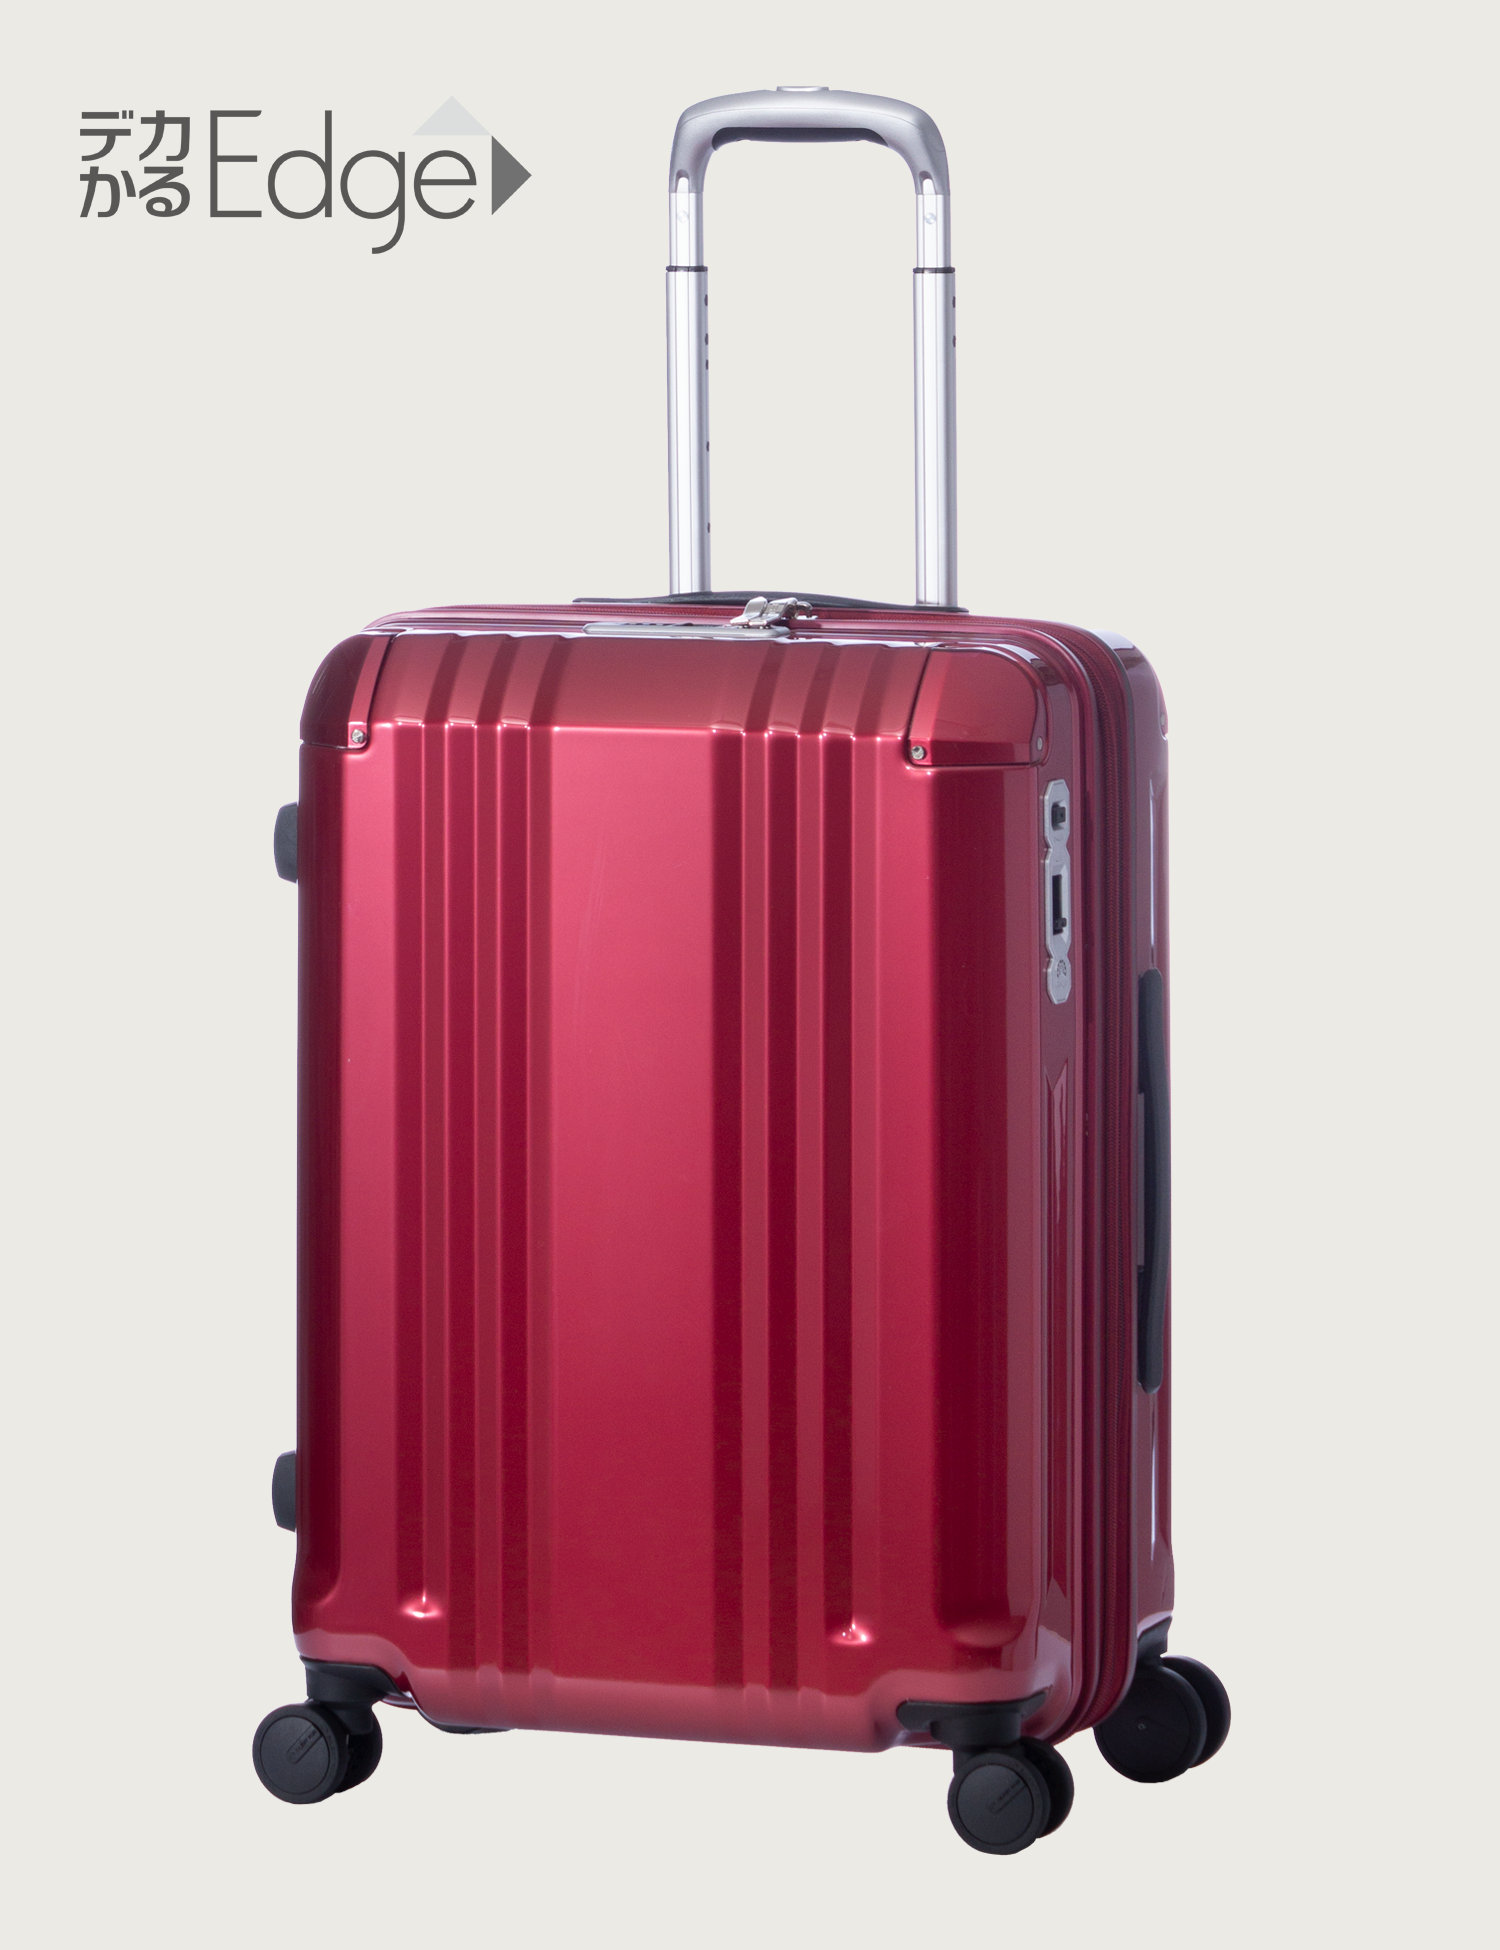 オススメ商品から選ぶ | アジア・ラゲージ 公式サイト | Asia Luggage Inc.